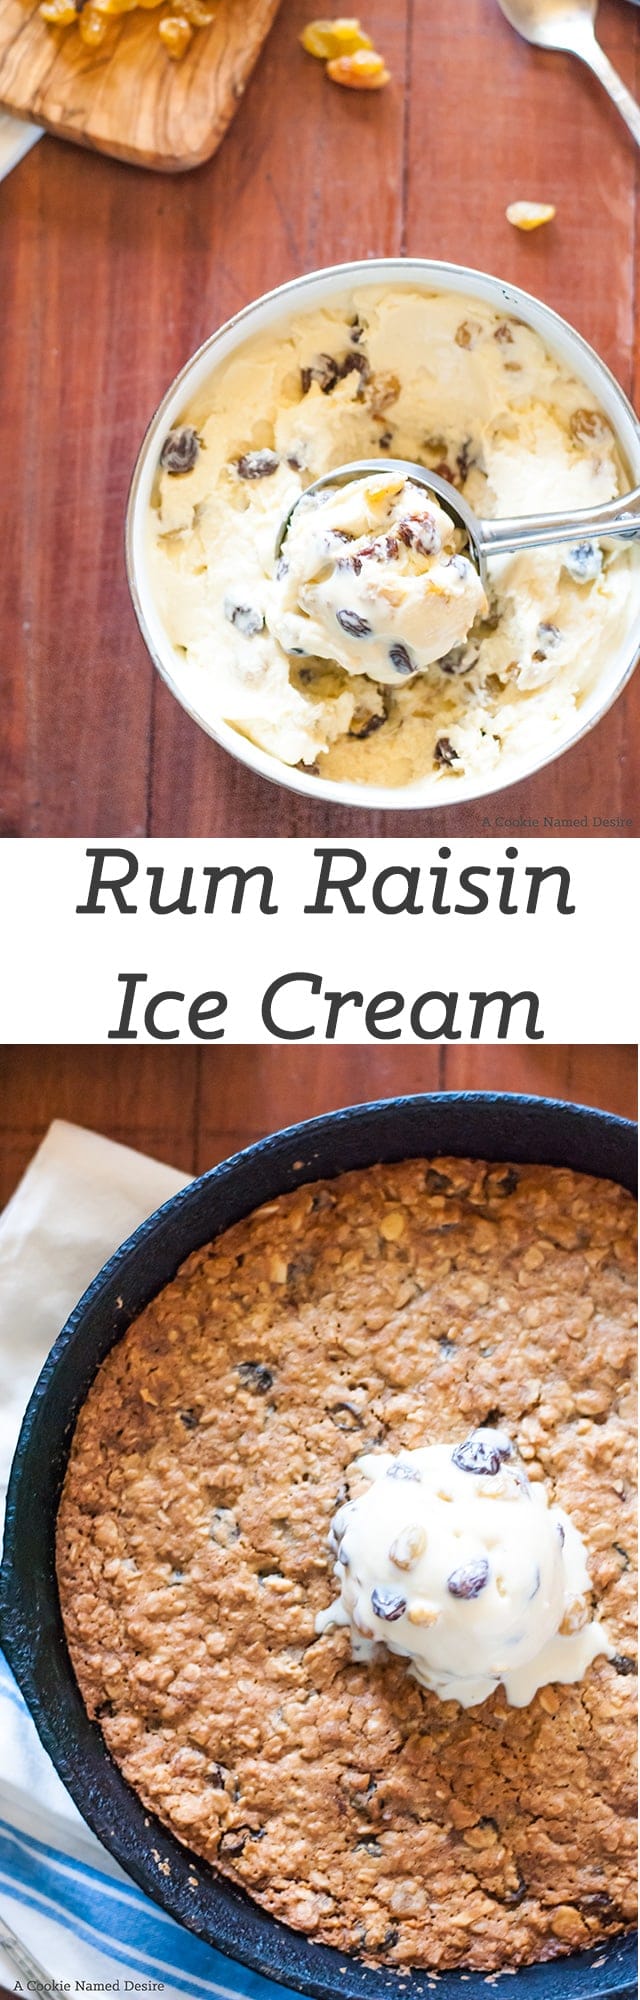 Rum raisin ice cream